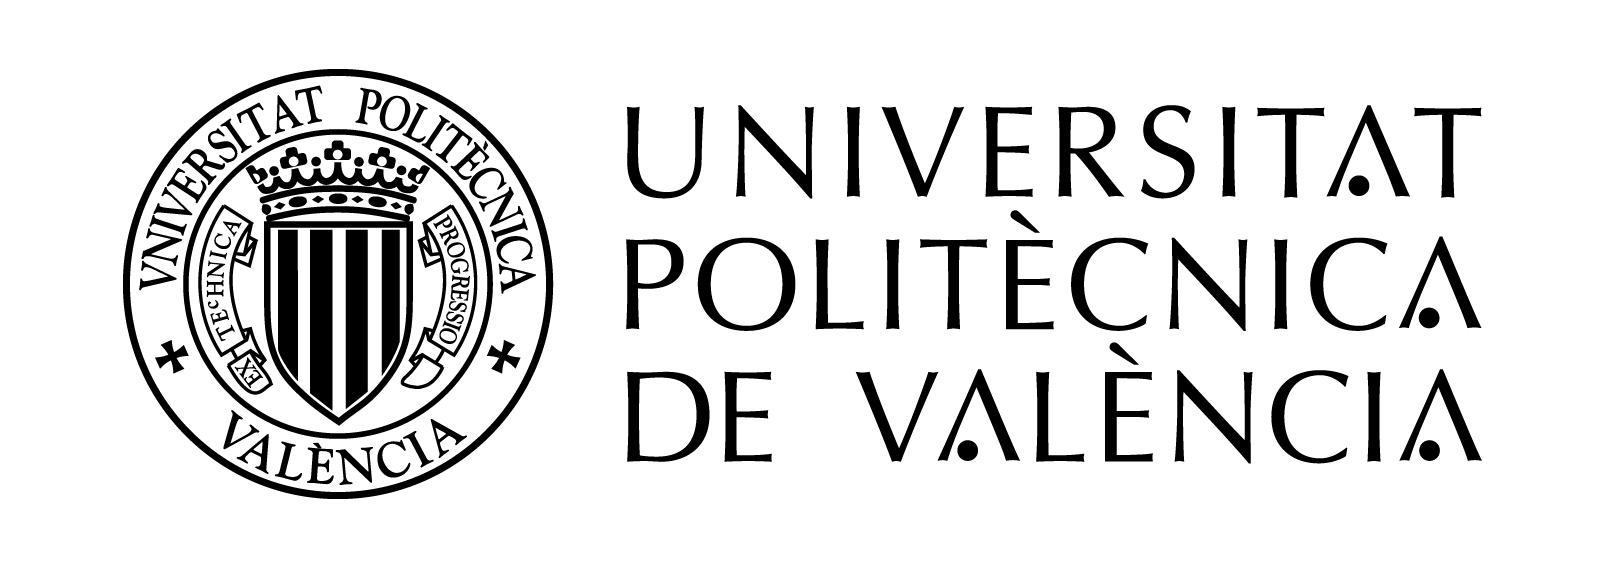 logo upv